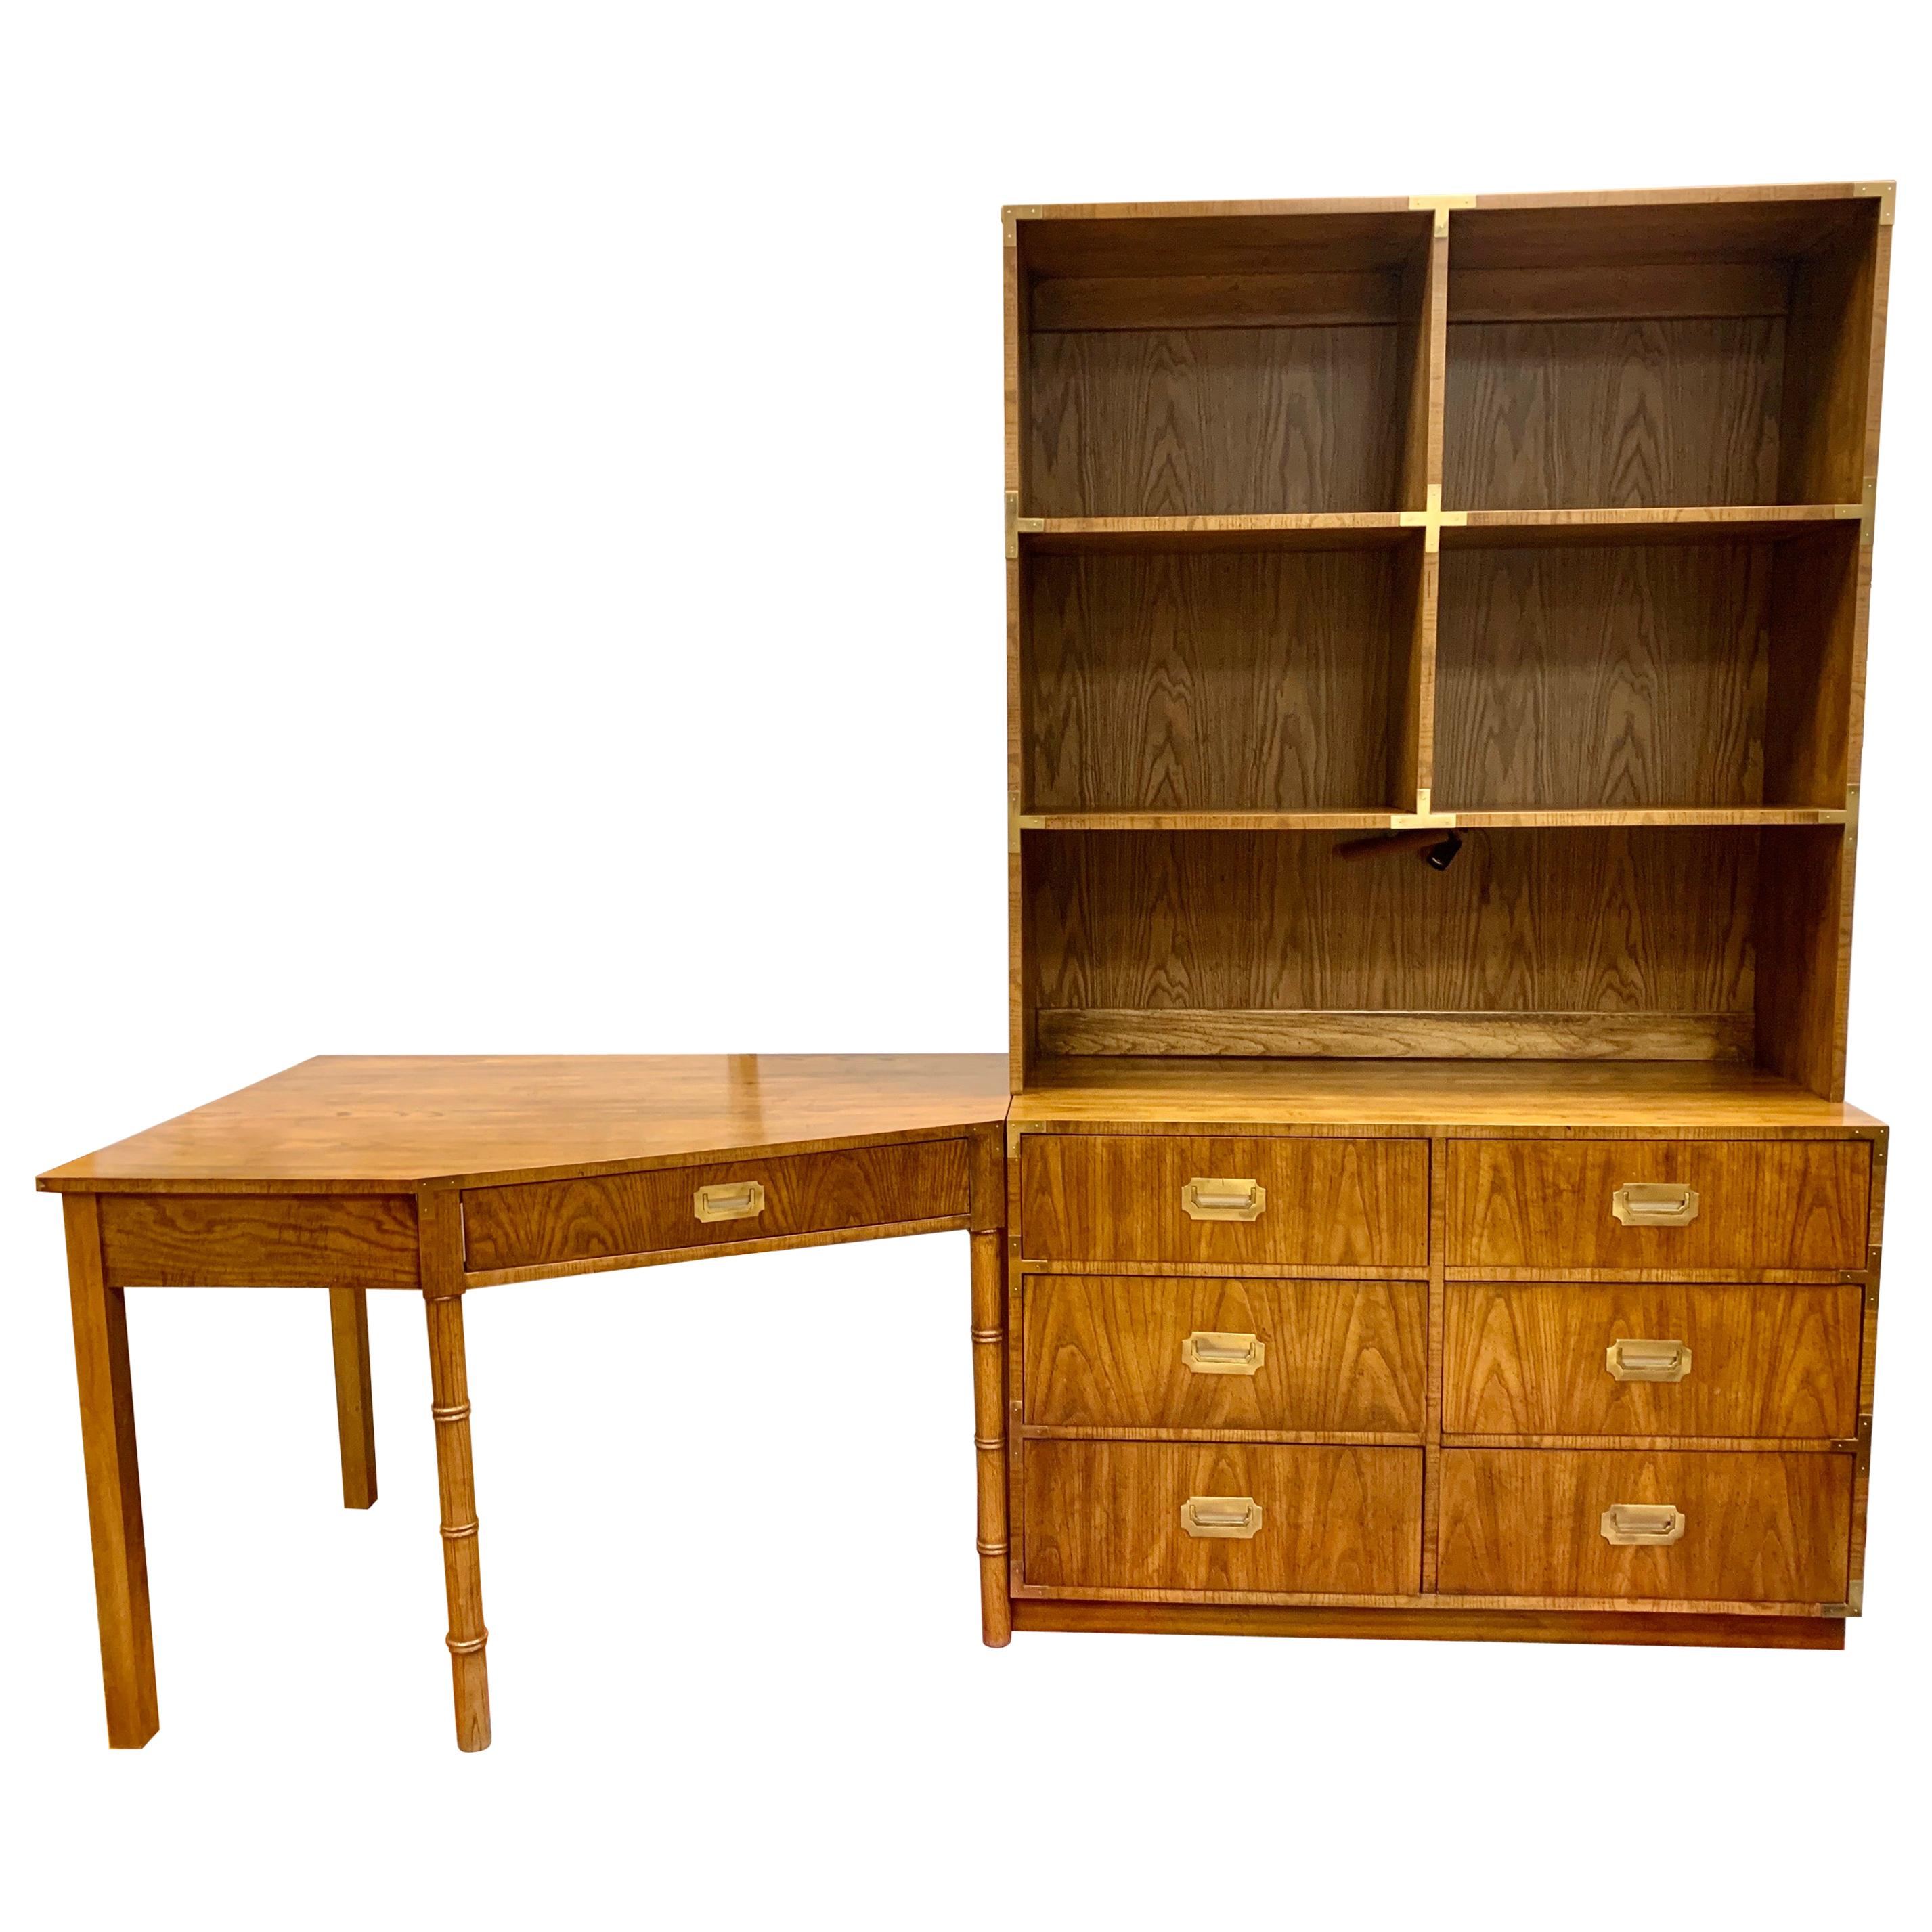 Midcentury Campaign Style Dresser, Desk and Bookshelves Unit 3-Piece Set